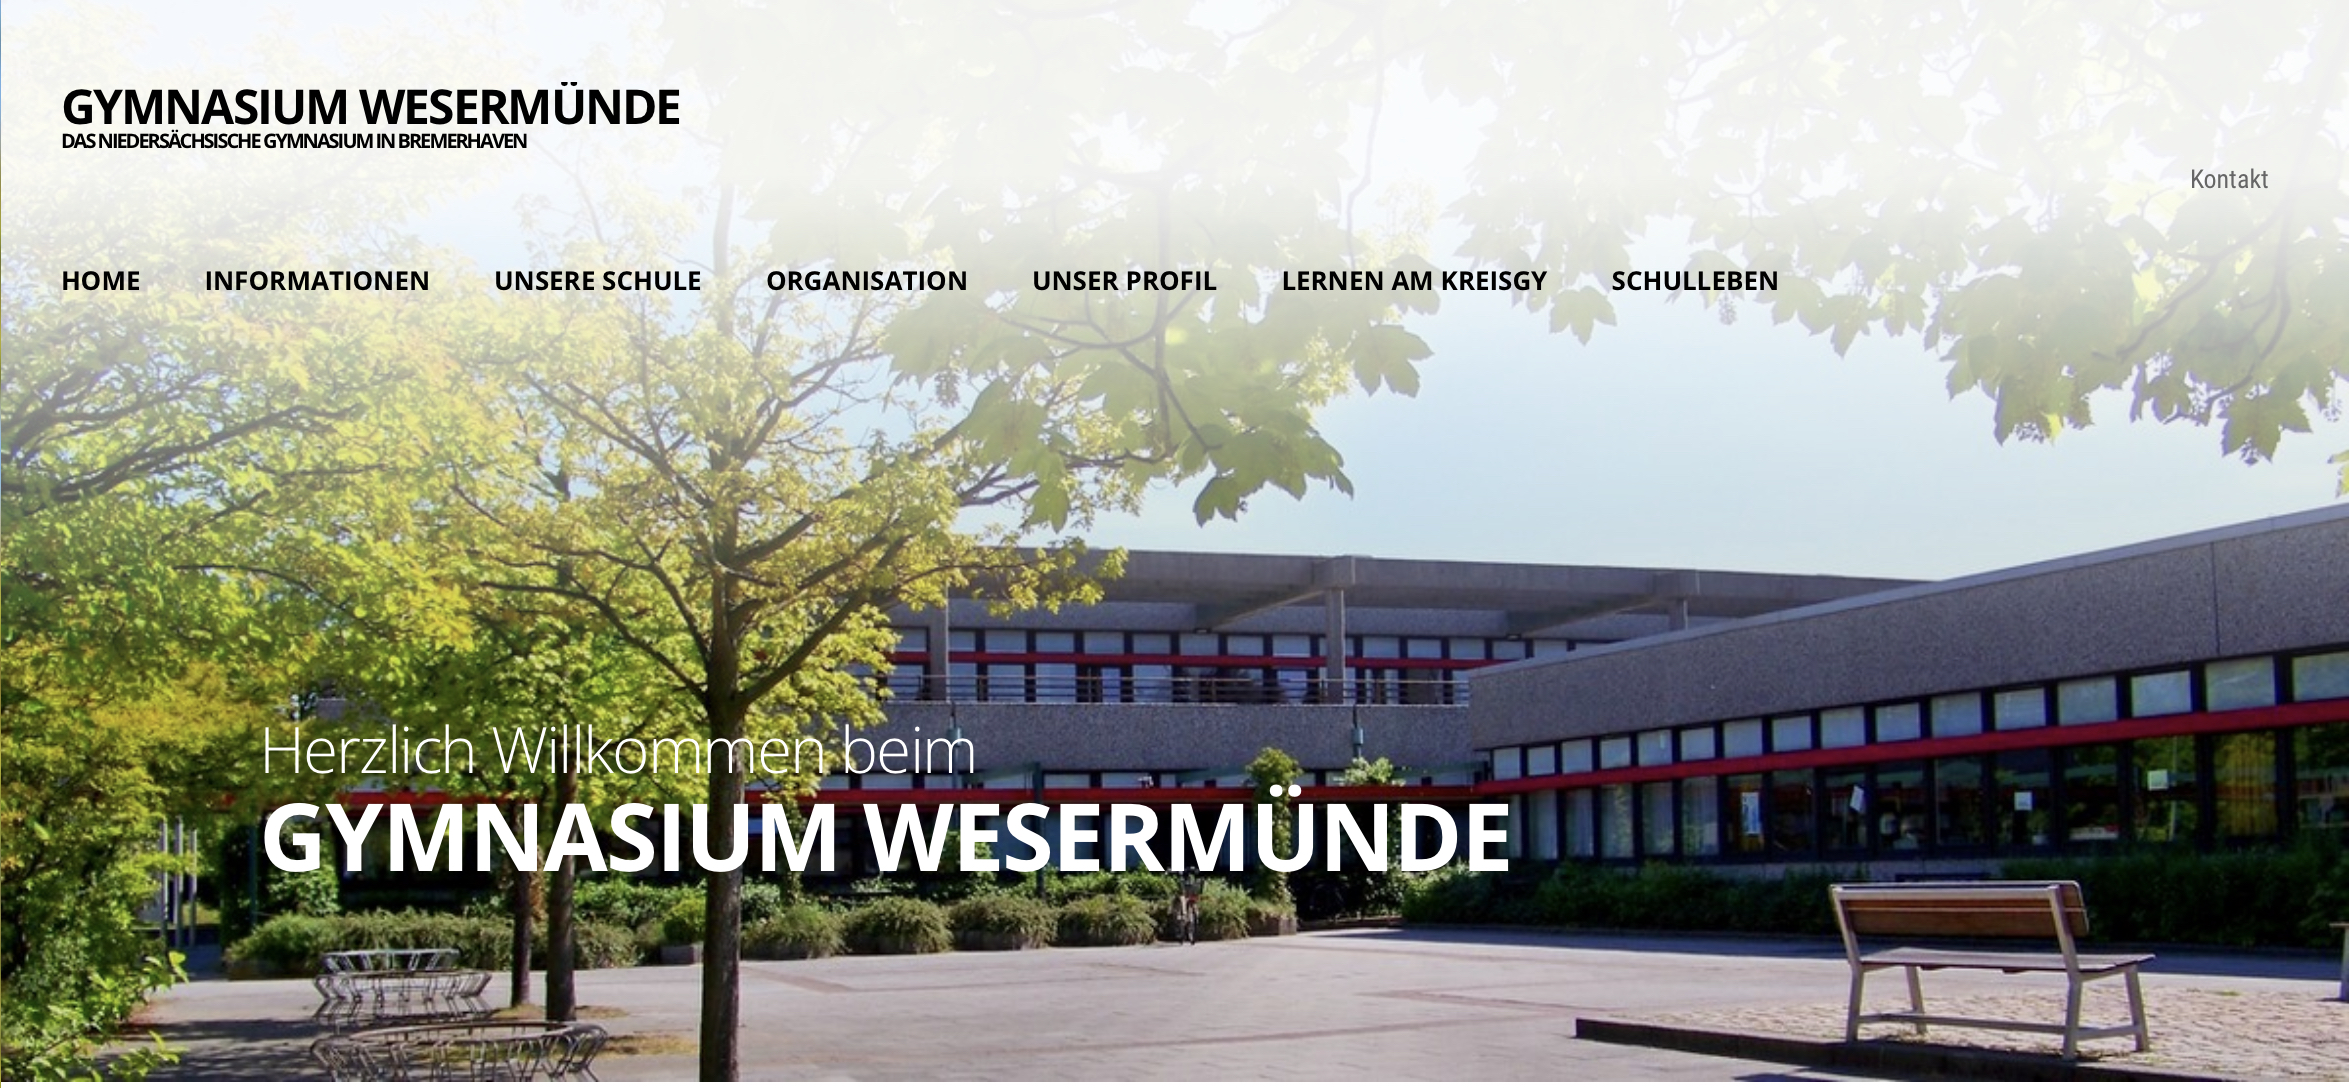 Gymnasium Wesermünde